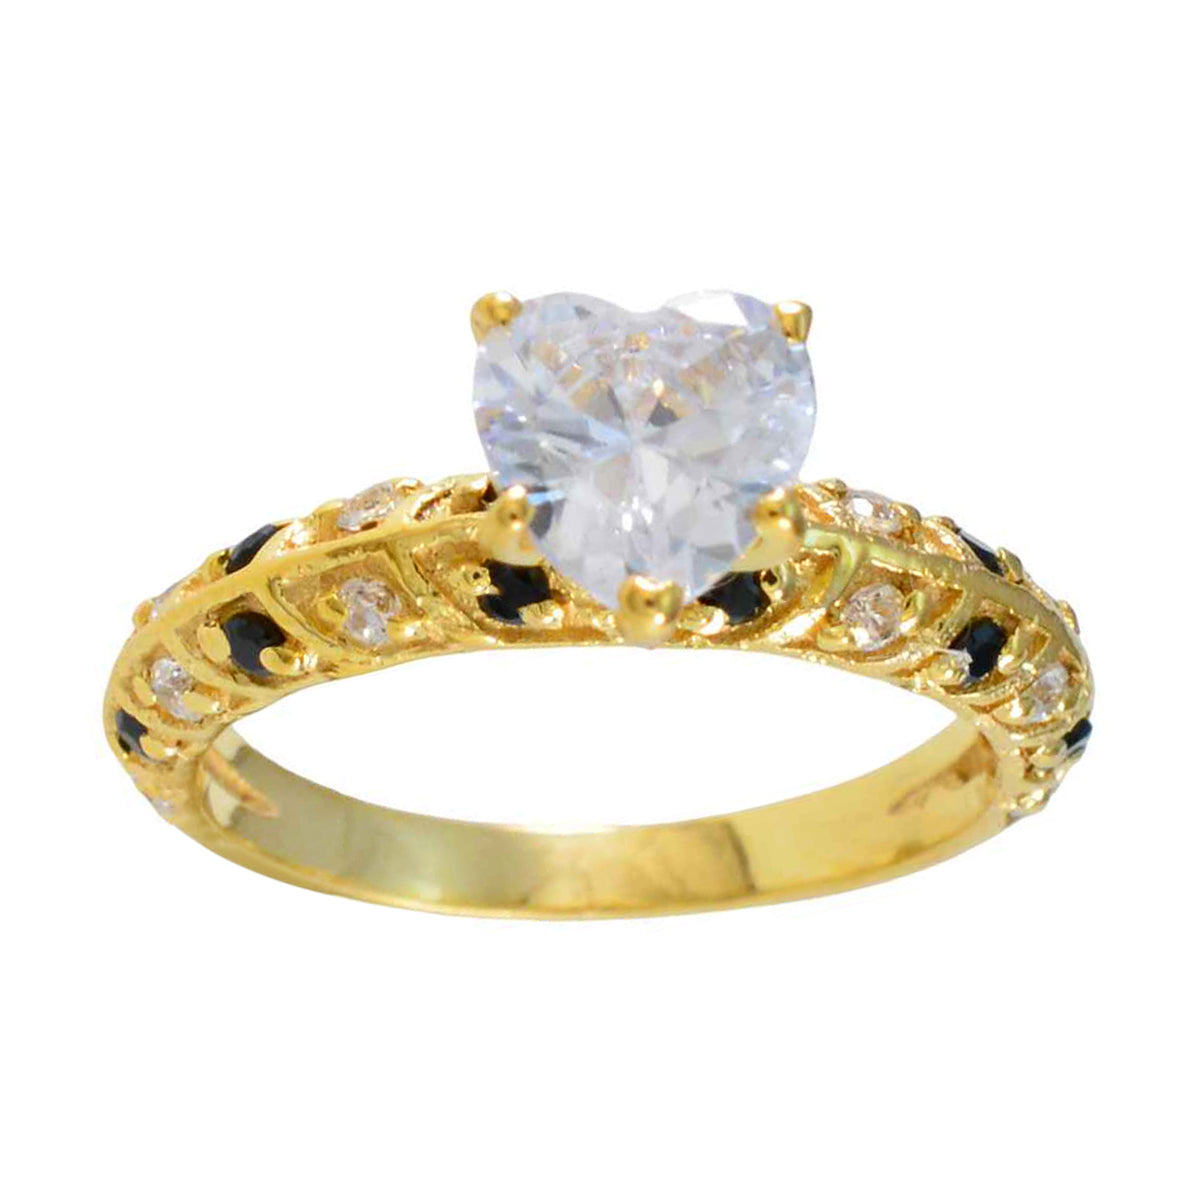 Anillo de plata vintage riyo con chapado en oro amarillo, piedra de zafiro azul, ajuste de punta en forma de corazón, joyería de moda, anillo de Año Nuevo